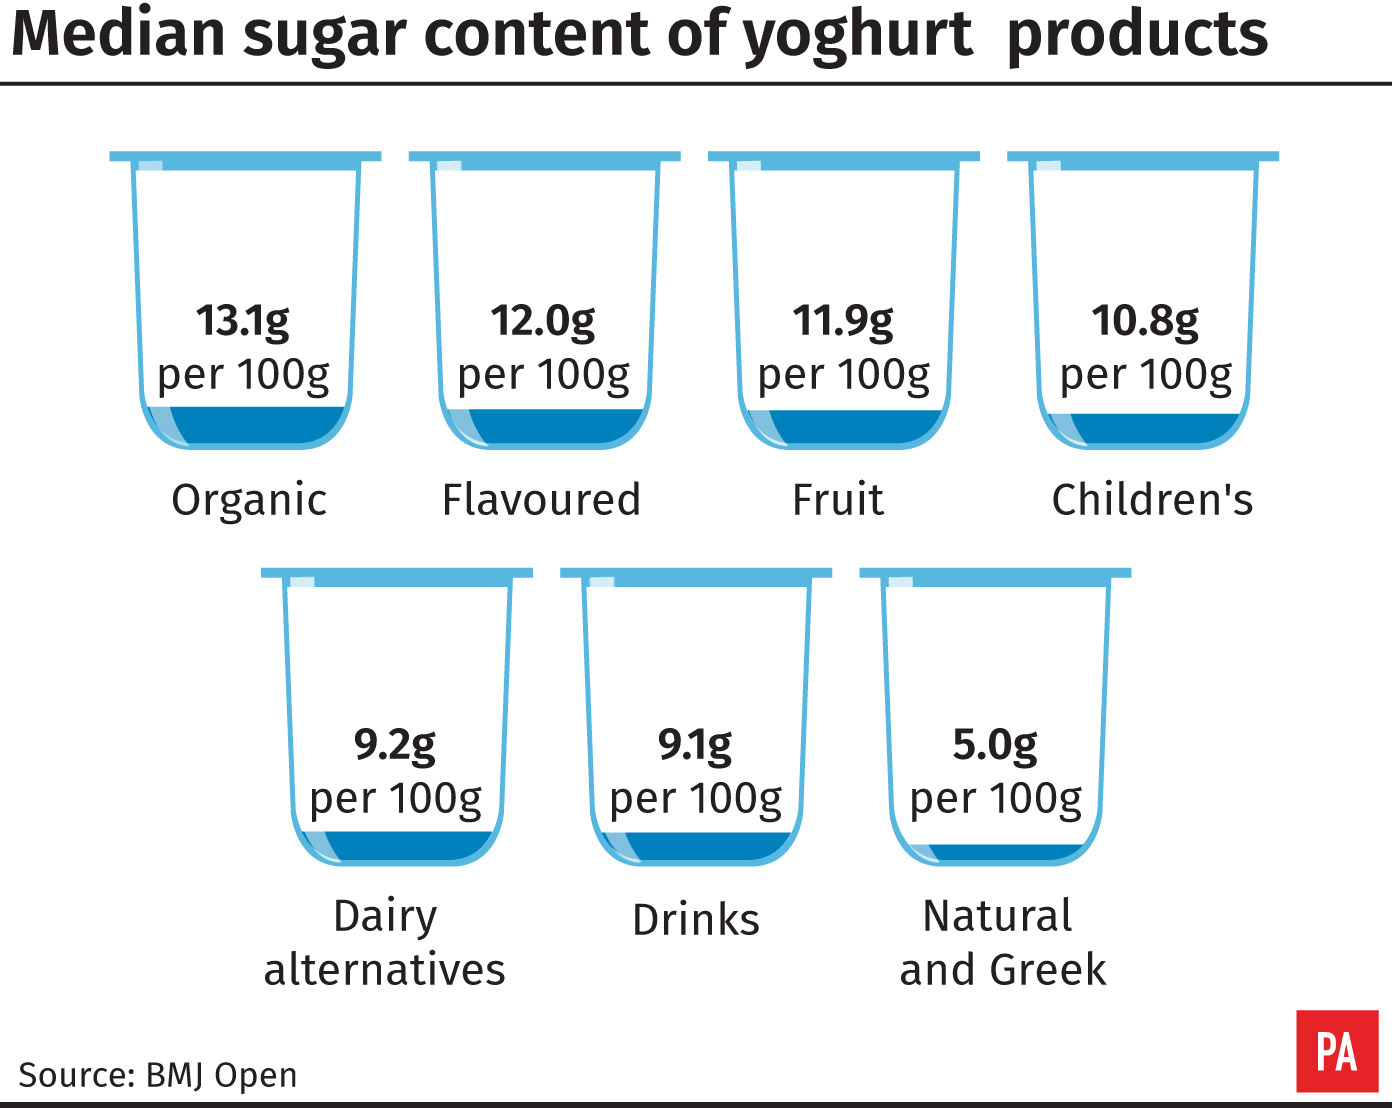 Median sugar levels in yoghurts